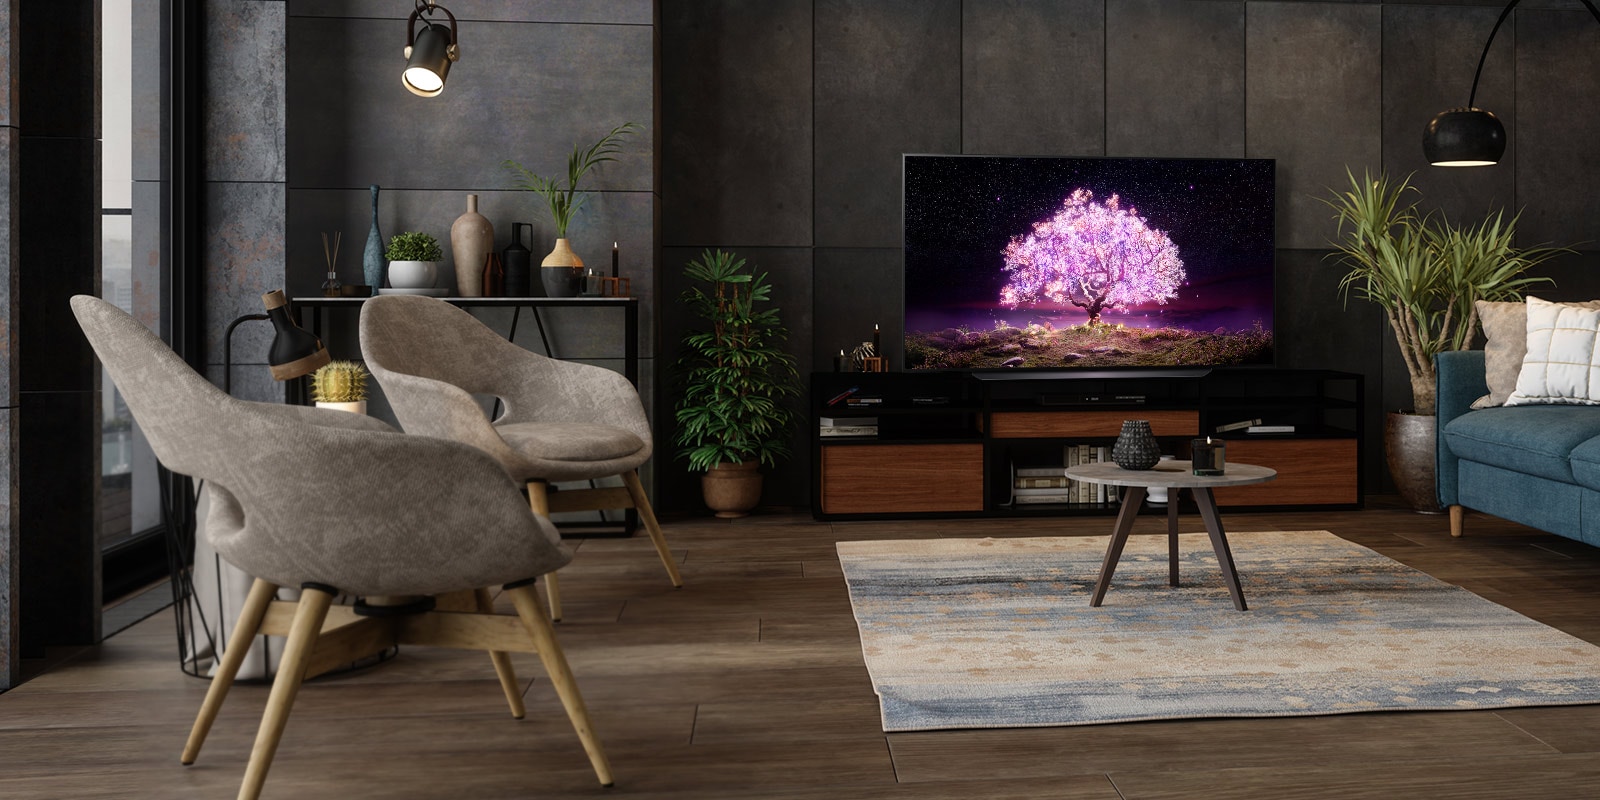 TV hiển thị cây phát ra ánh sáng màu tím trong khung cảnh ngôi nhà sang trọng